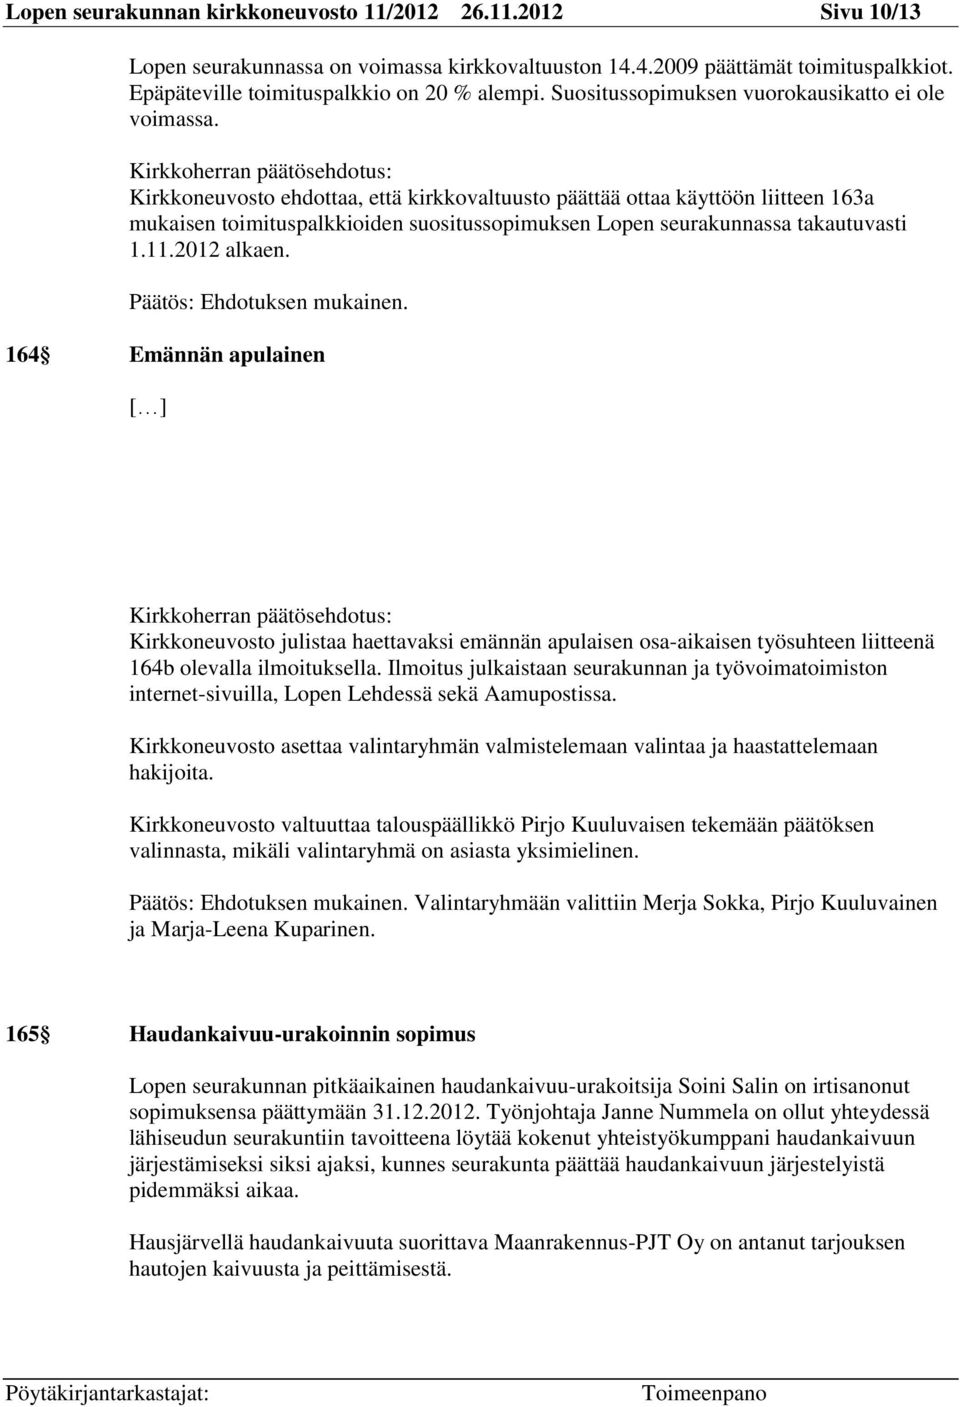 Kirkkoneuvosto ehdottaa, että kirkkovaltuusto päättää ottaa käyttöön liitteen 163a mukaisen toimituspalkkioiden suositussopimuksen Lopen seurakunnassa takautuvasti 1.11.2012 alkaen.